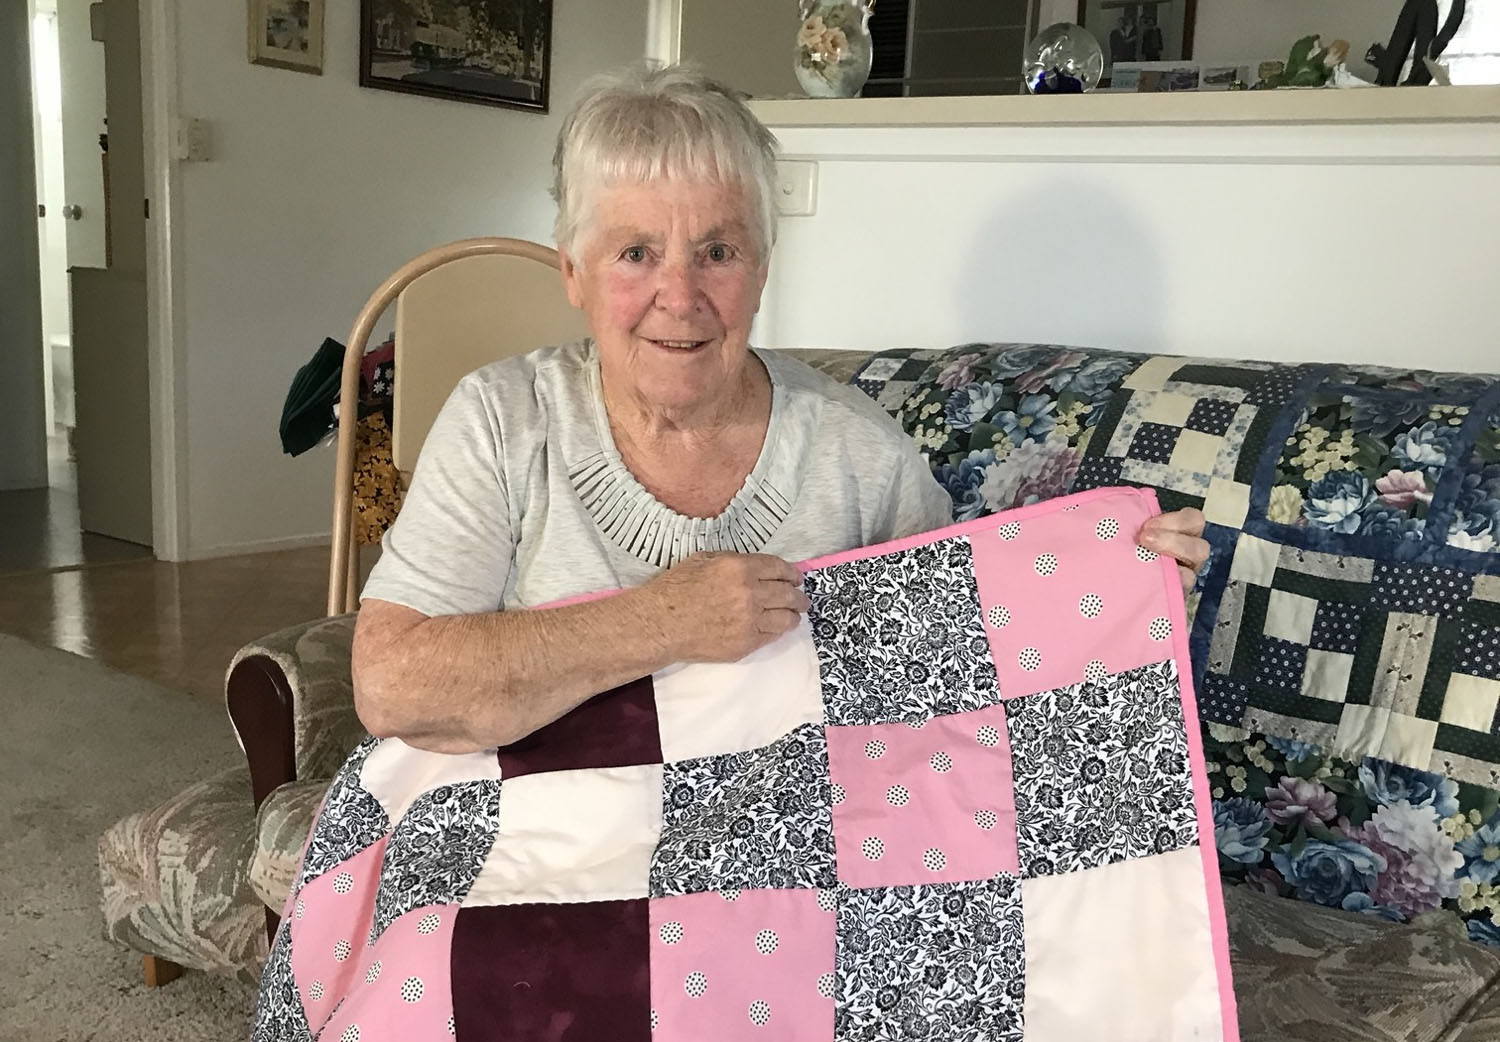 An older white women holds up a handmade quilt